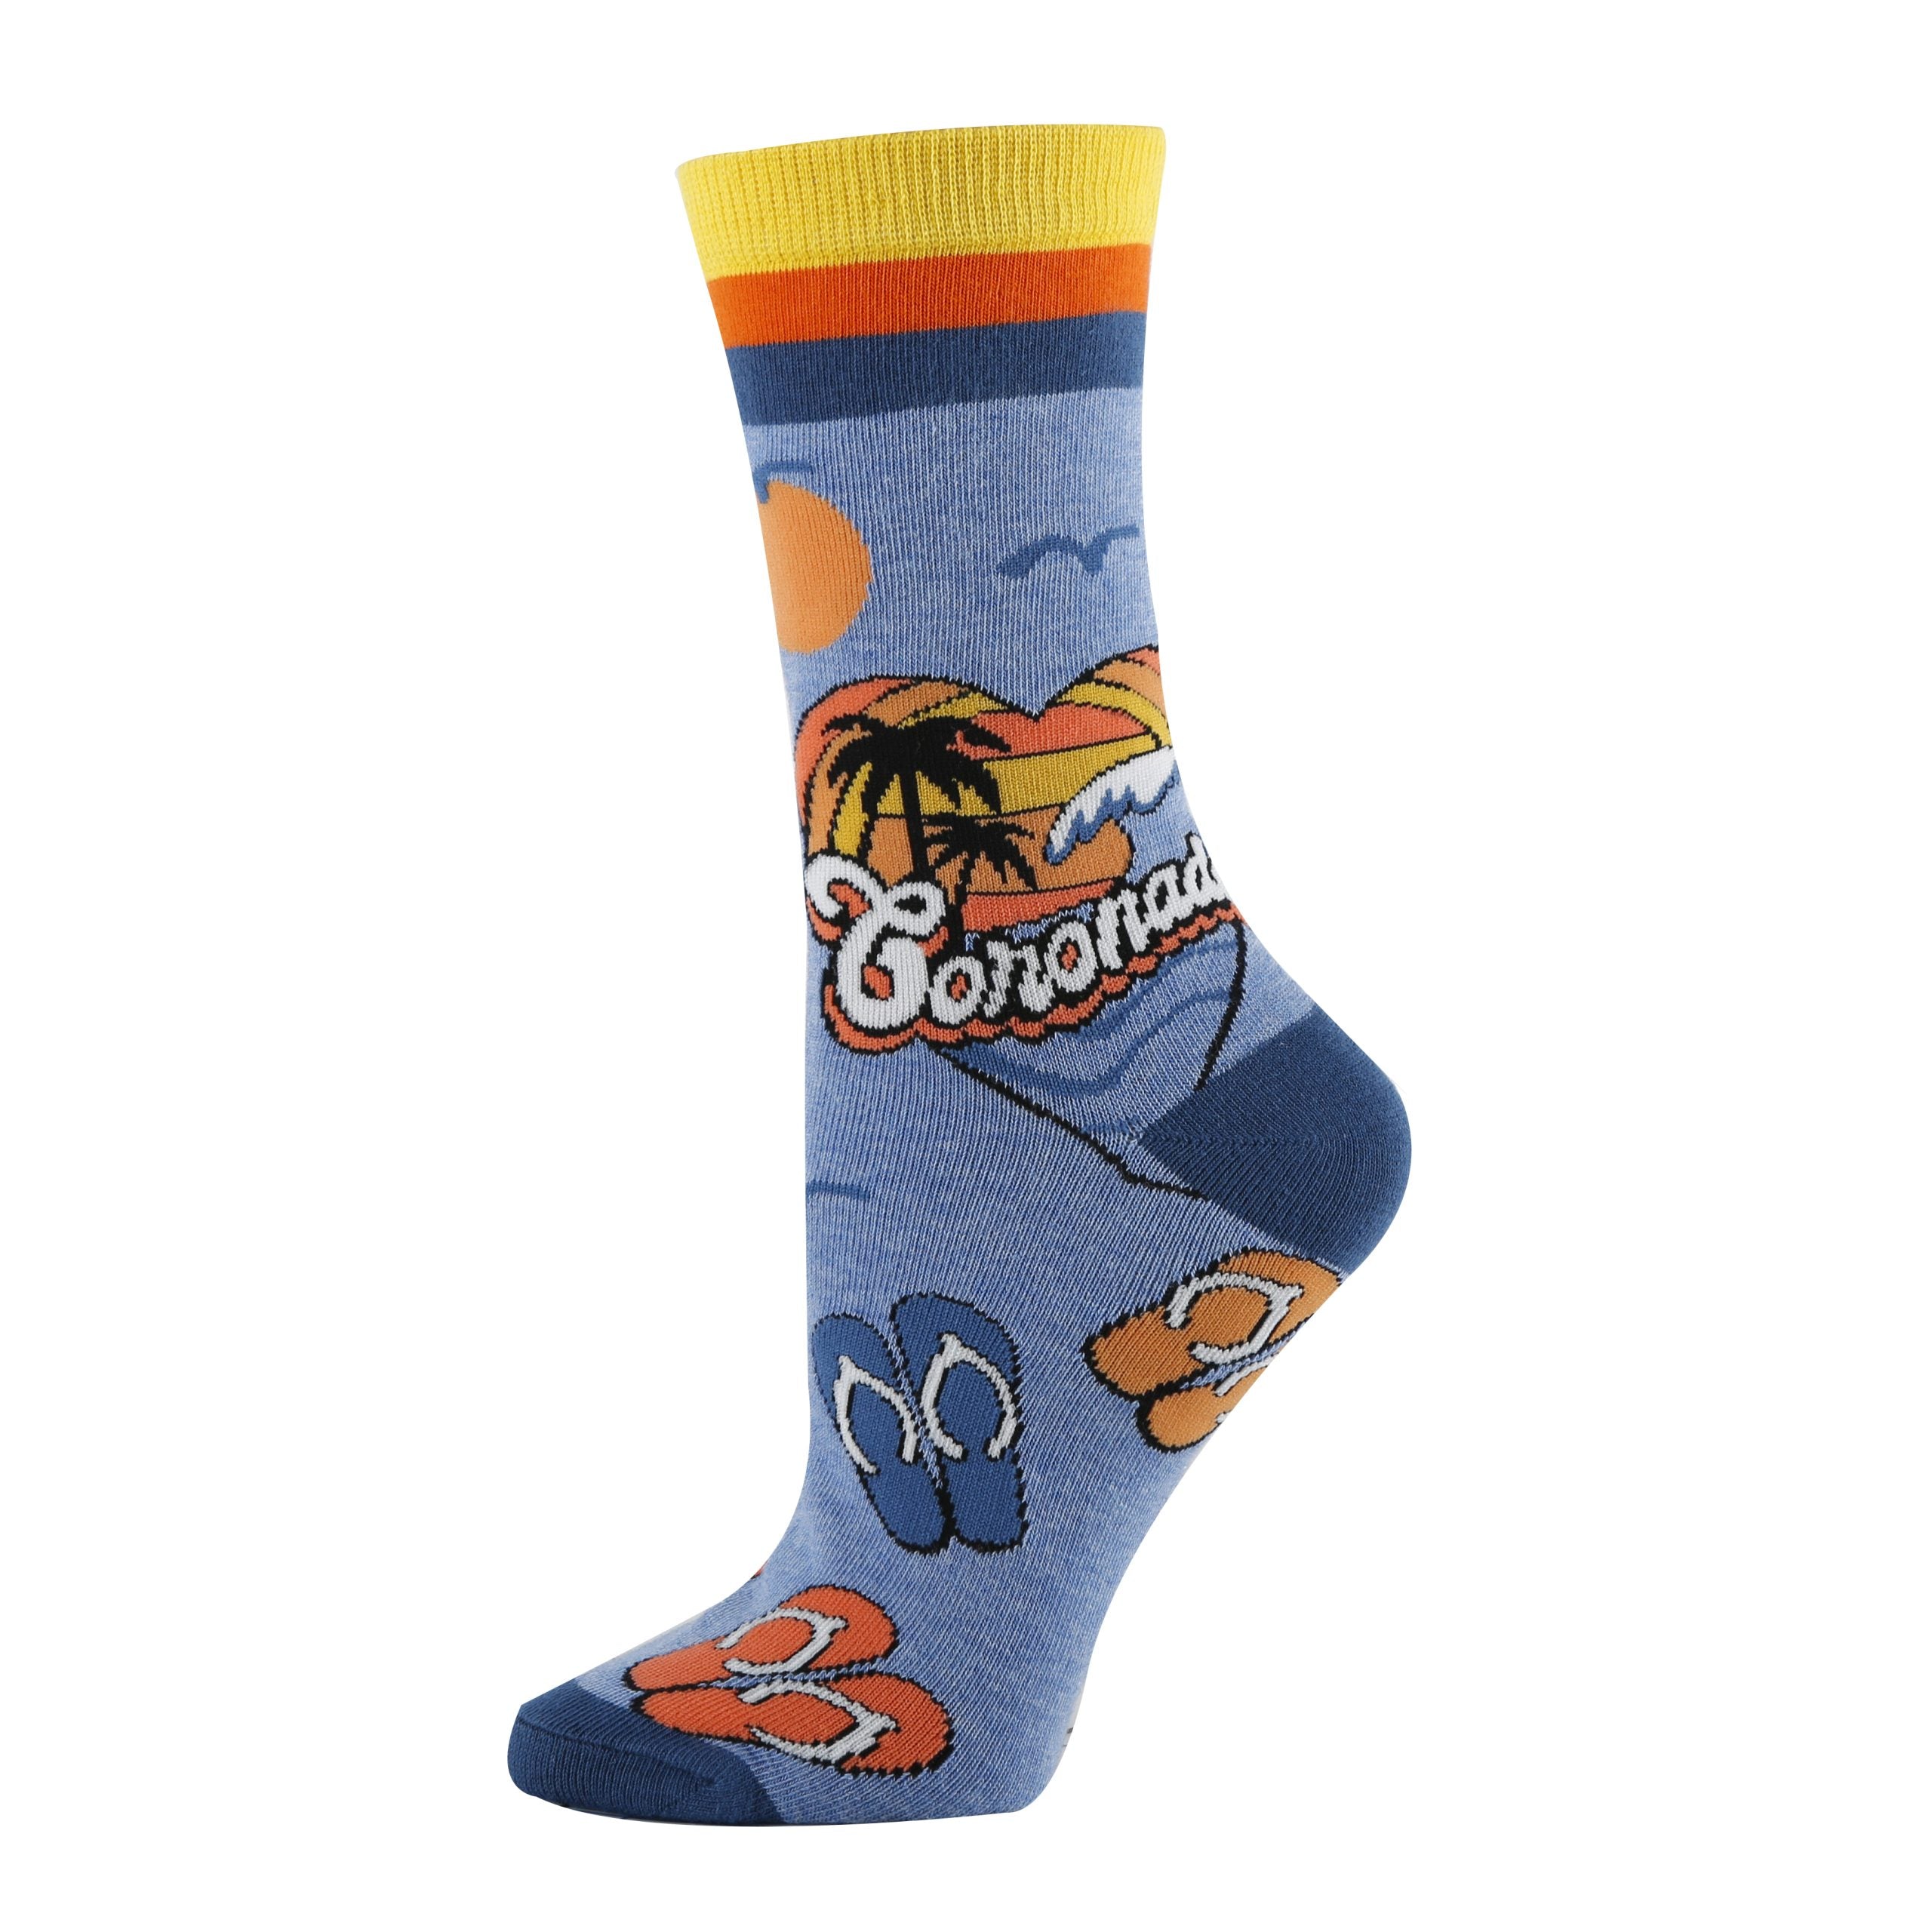 Coronado Socks